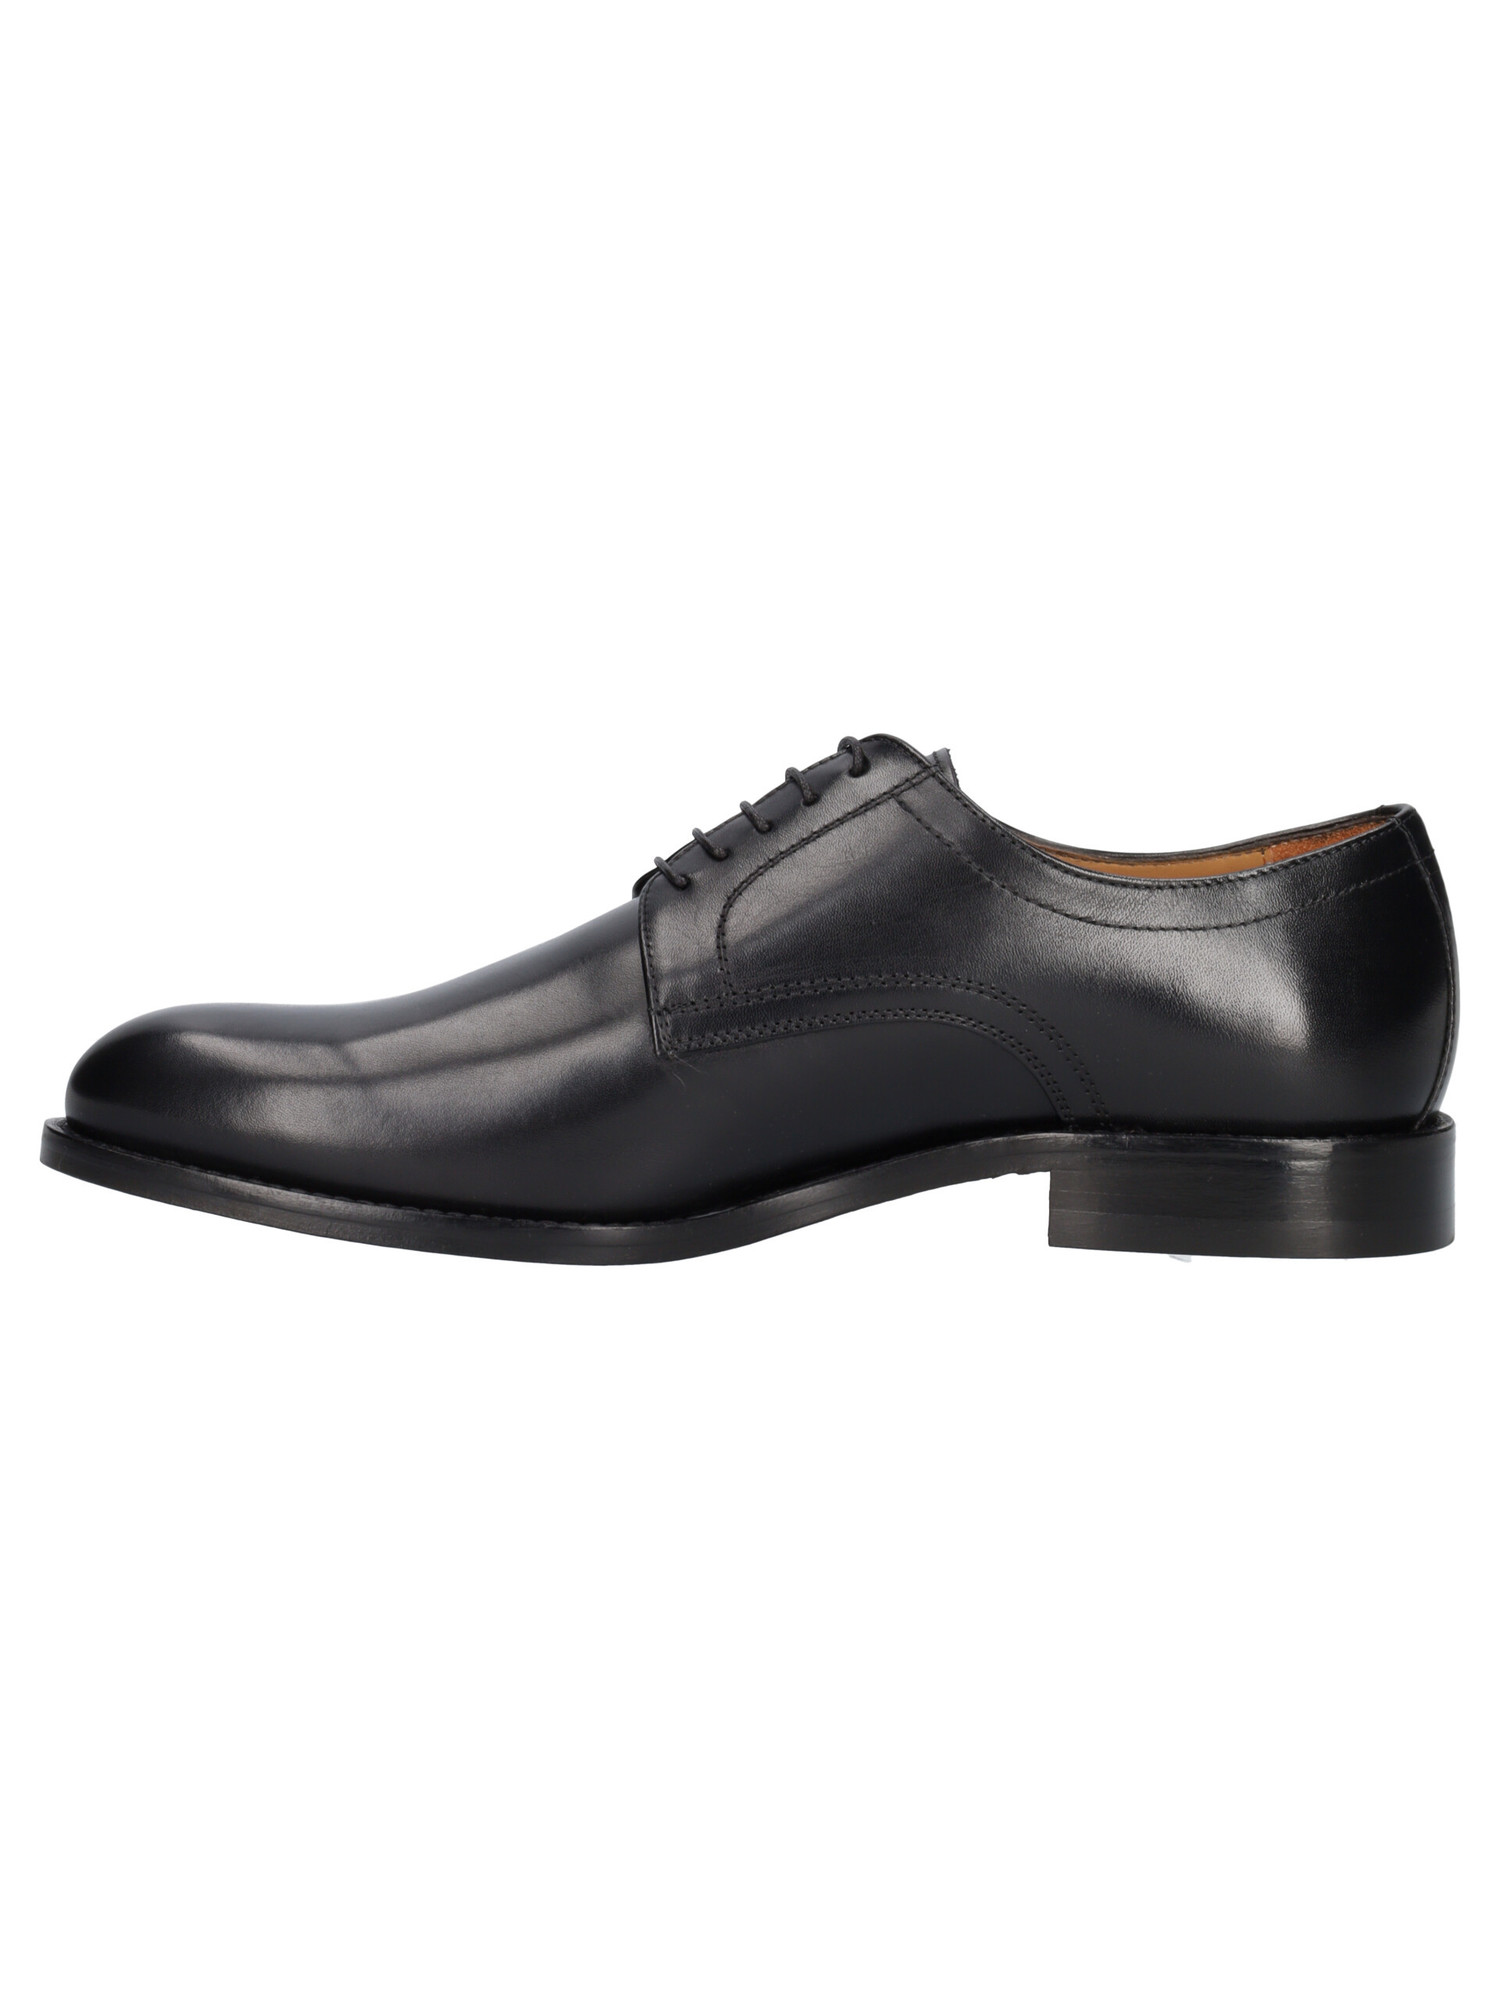 scarpa-elegante-mercanti-fiorentini-da-uomo-nera-4a0a63